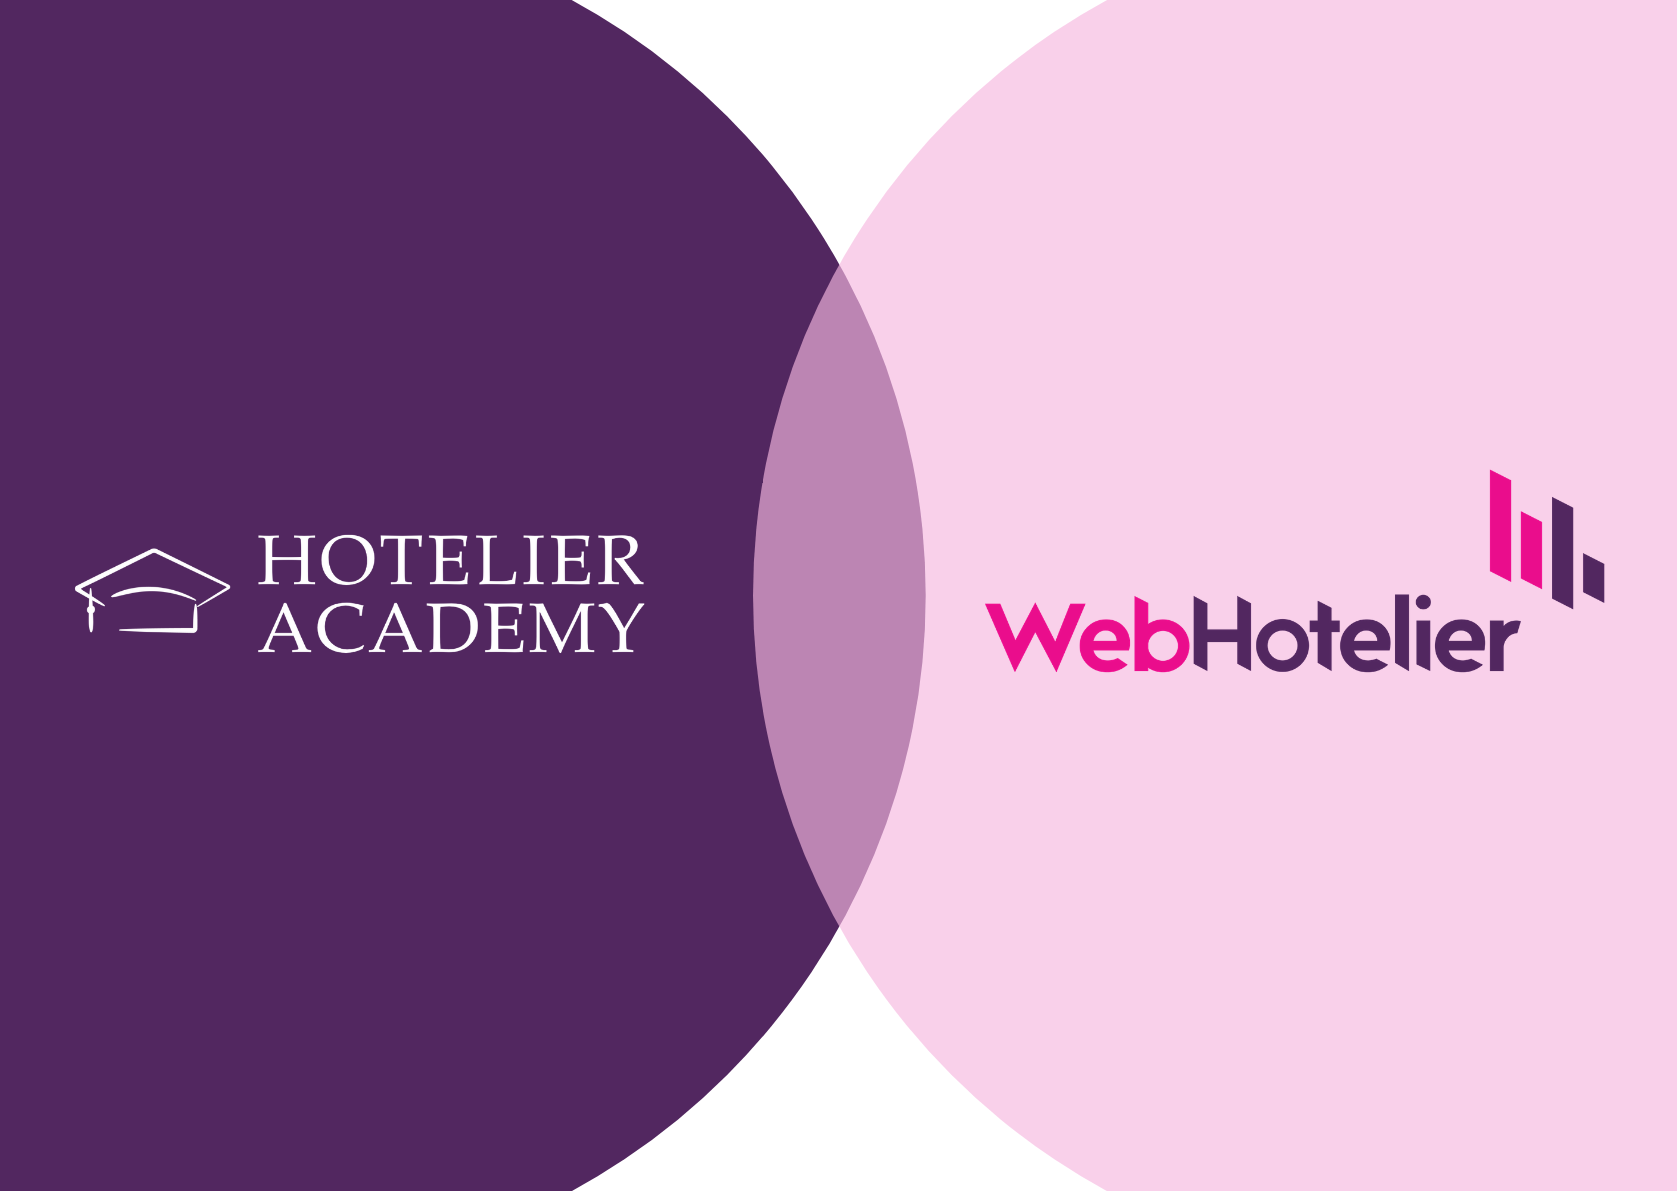 Η νέα συνεργασία της Hotelier Academy με την WebHotelier